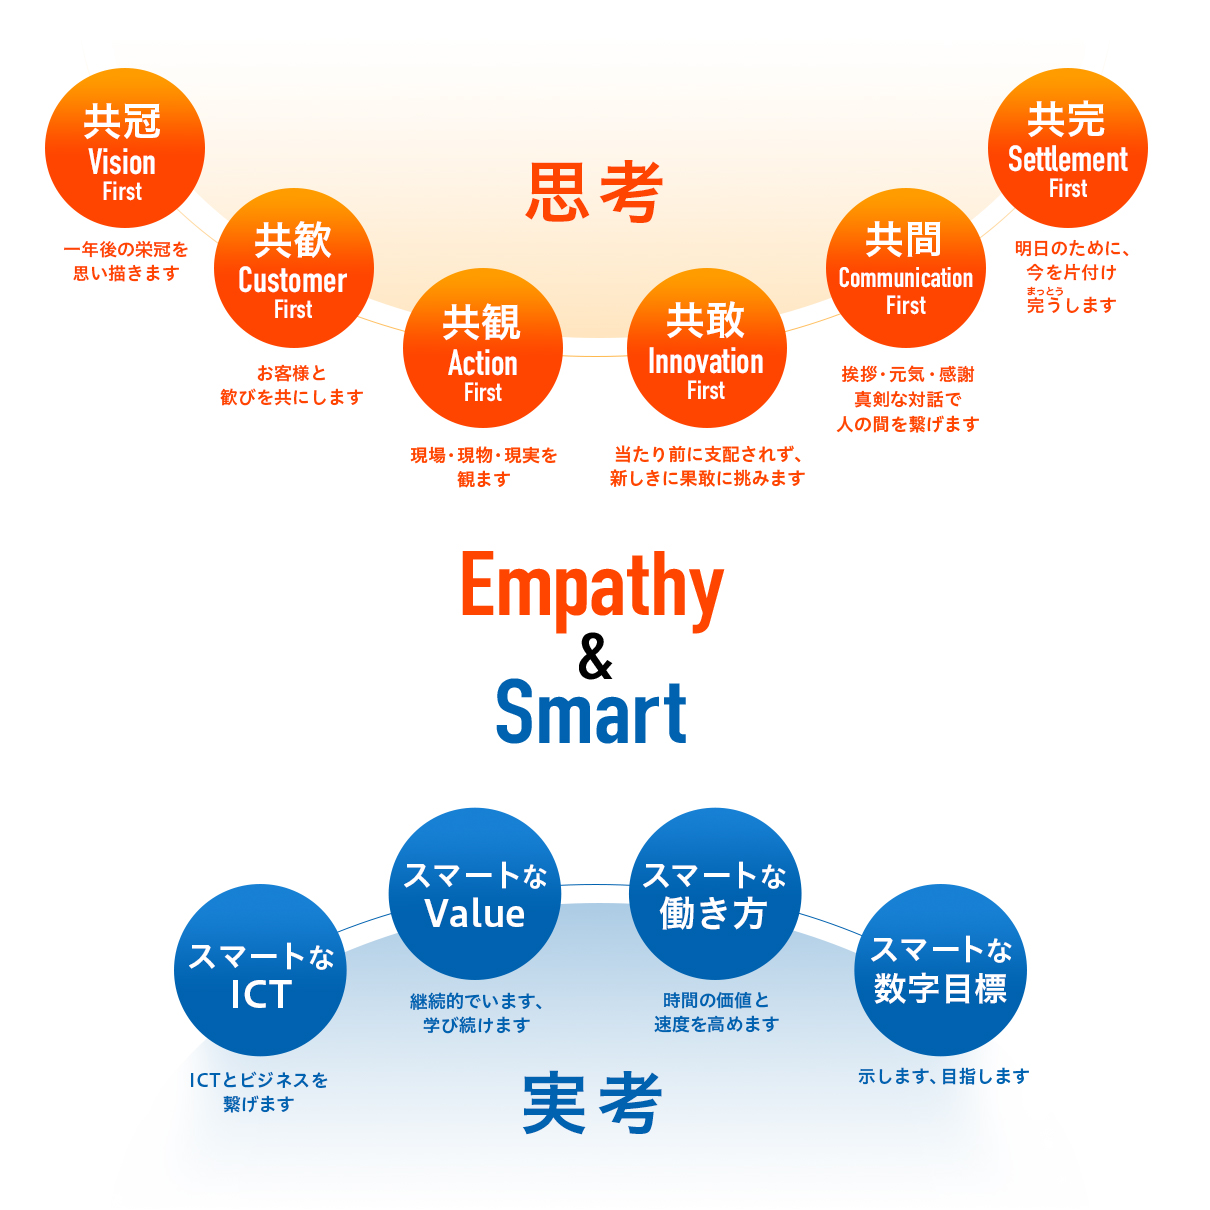 Empathy & Smart